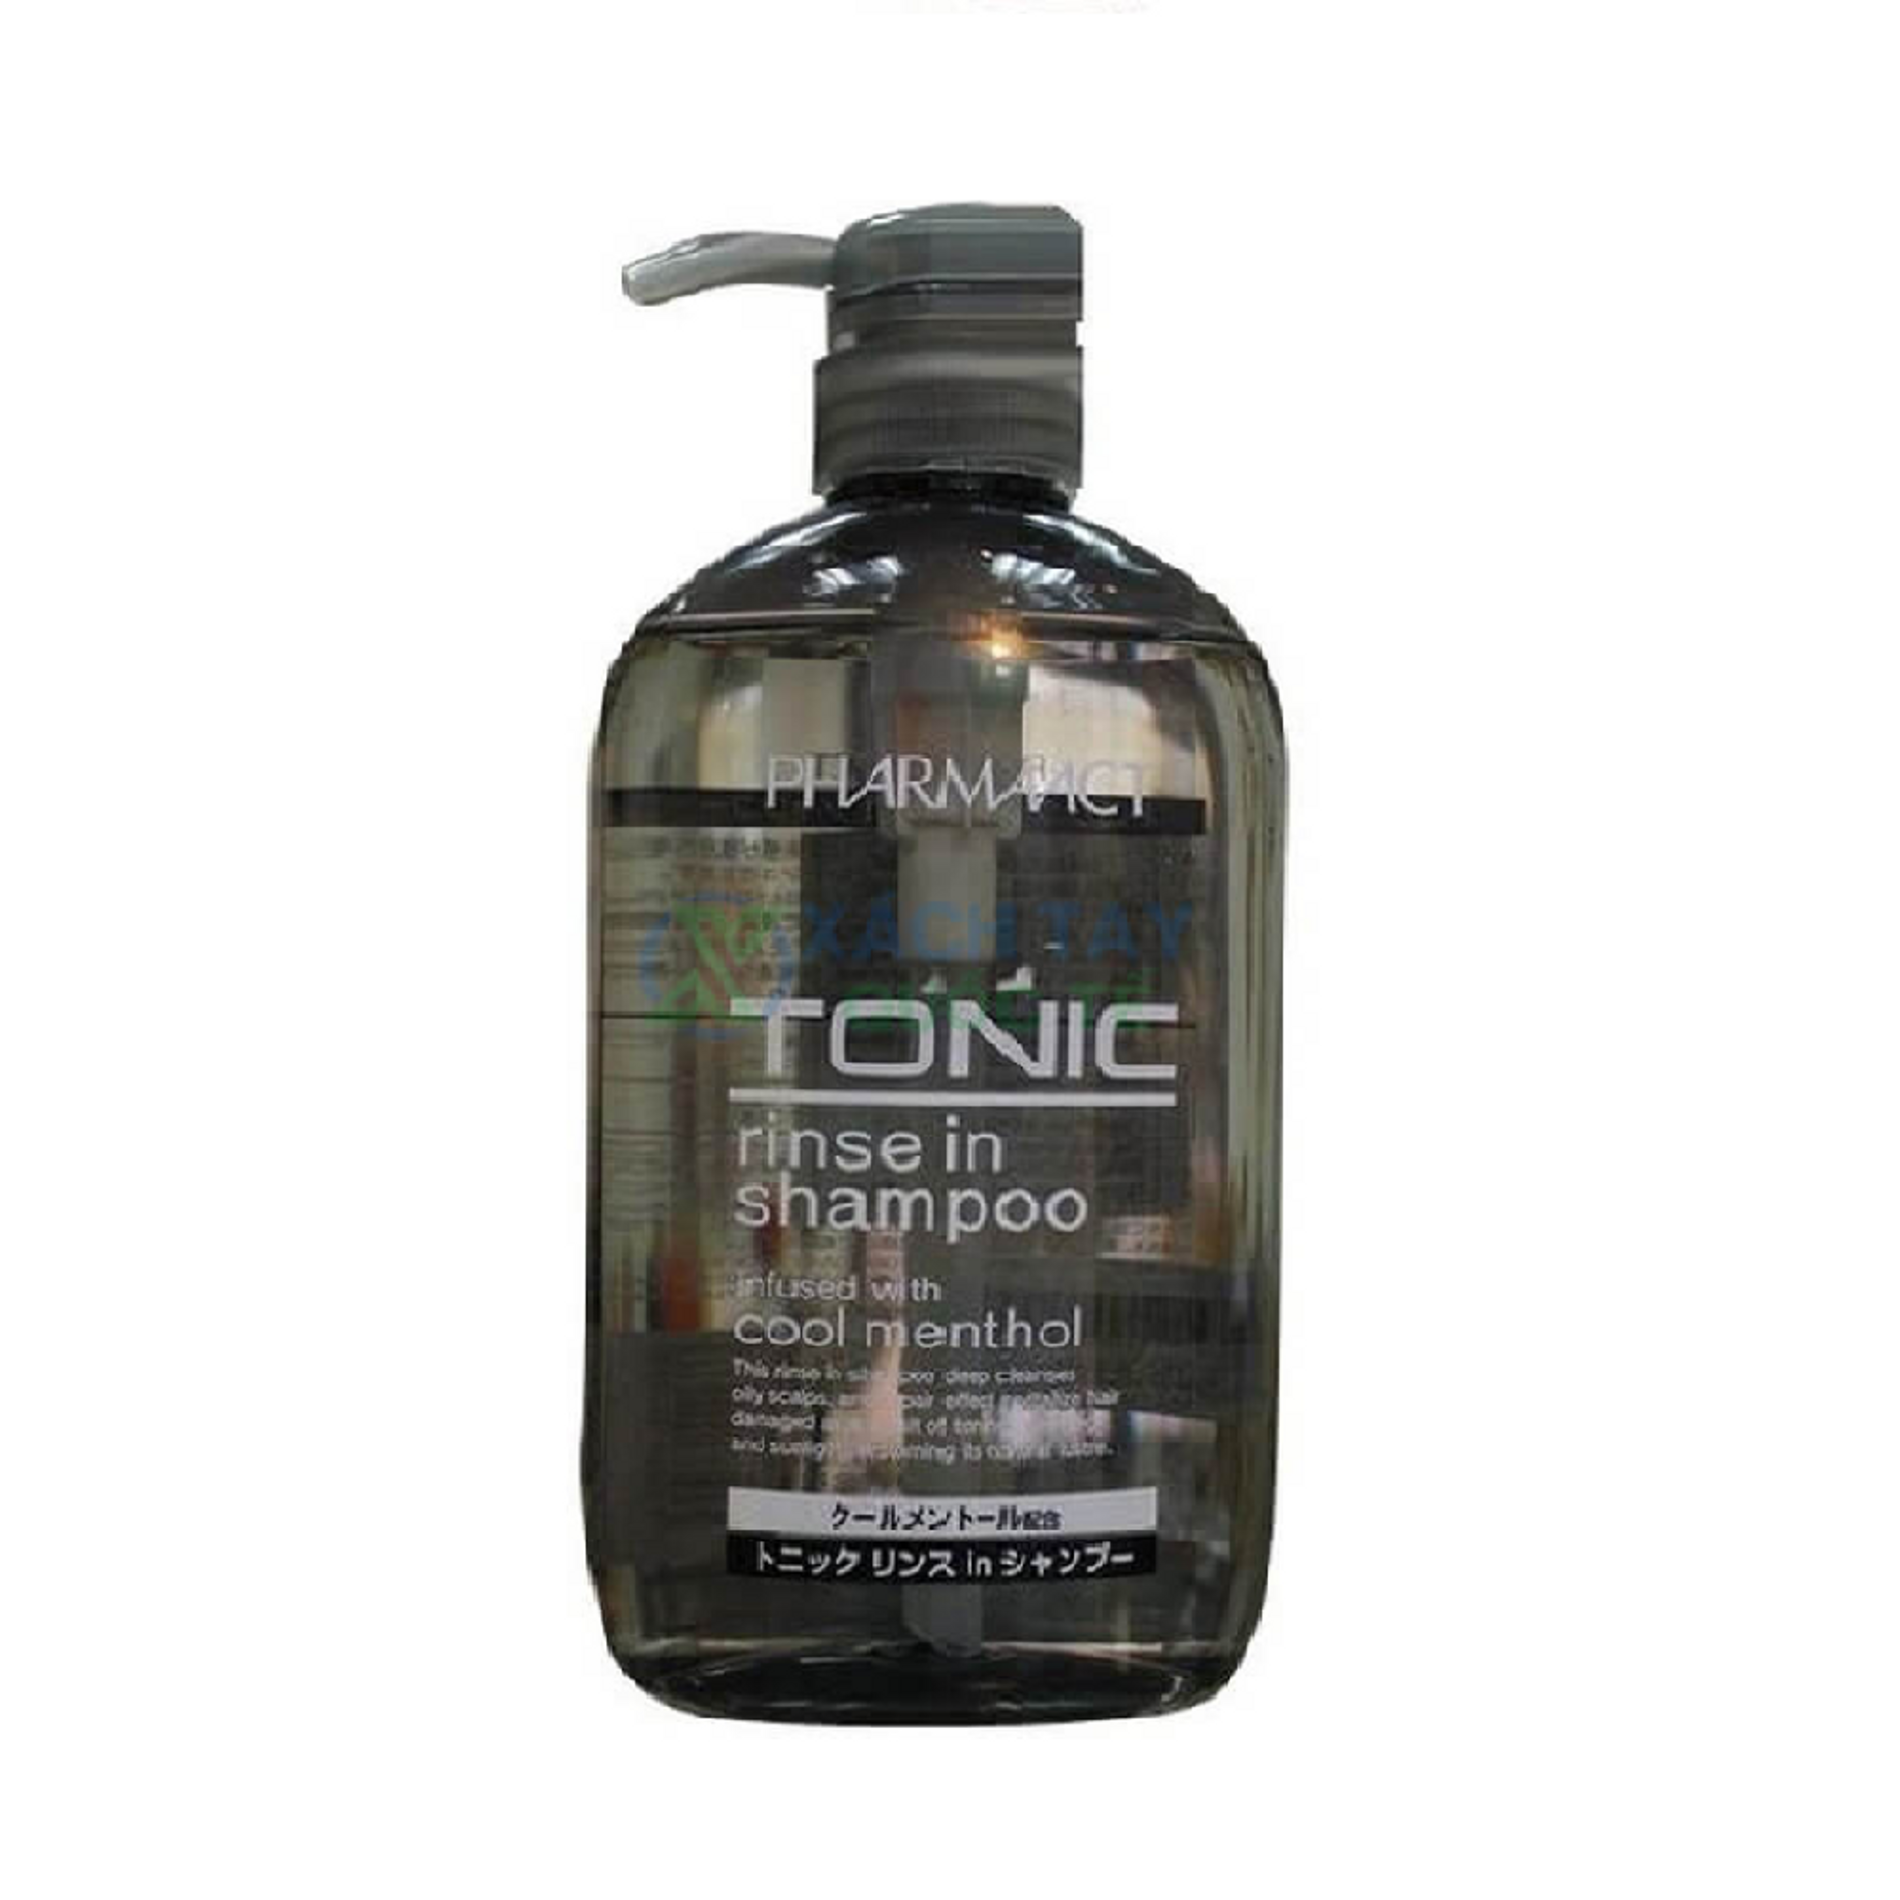 dau-goi-duong-toc-danh-cho-nam-pharmact-tonic-rinse-in-shampoo-600ml-2